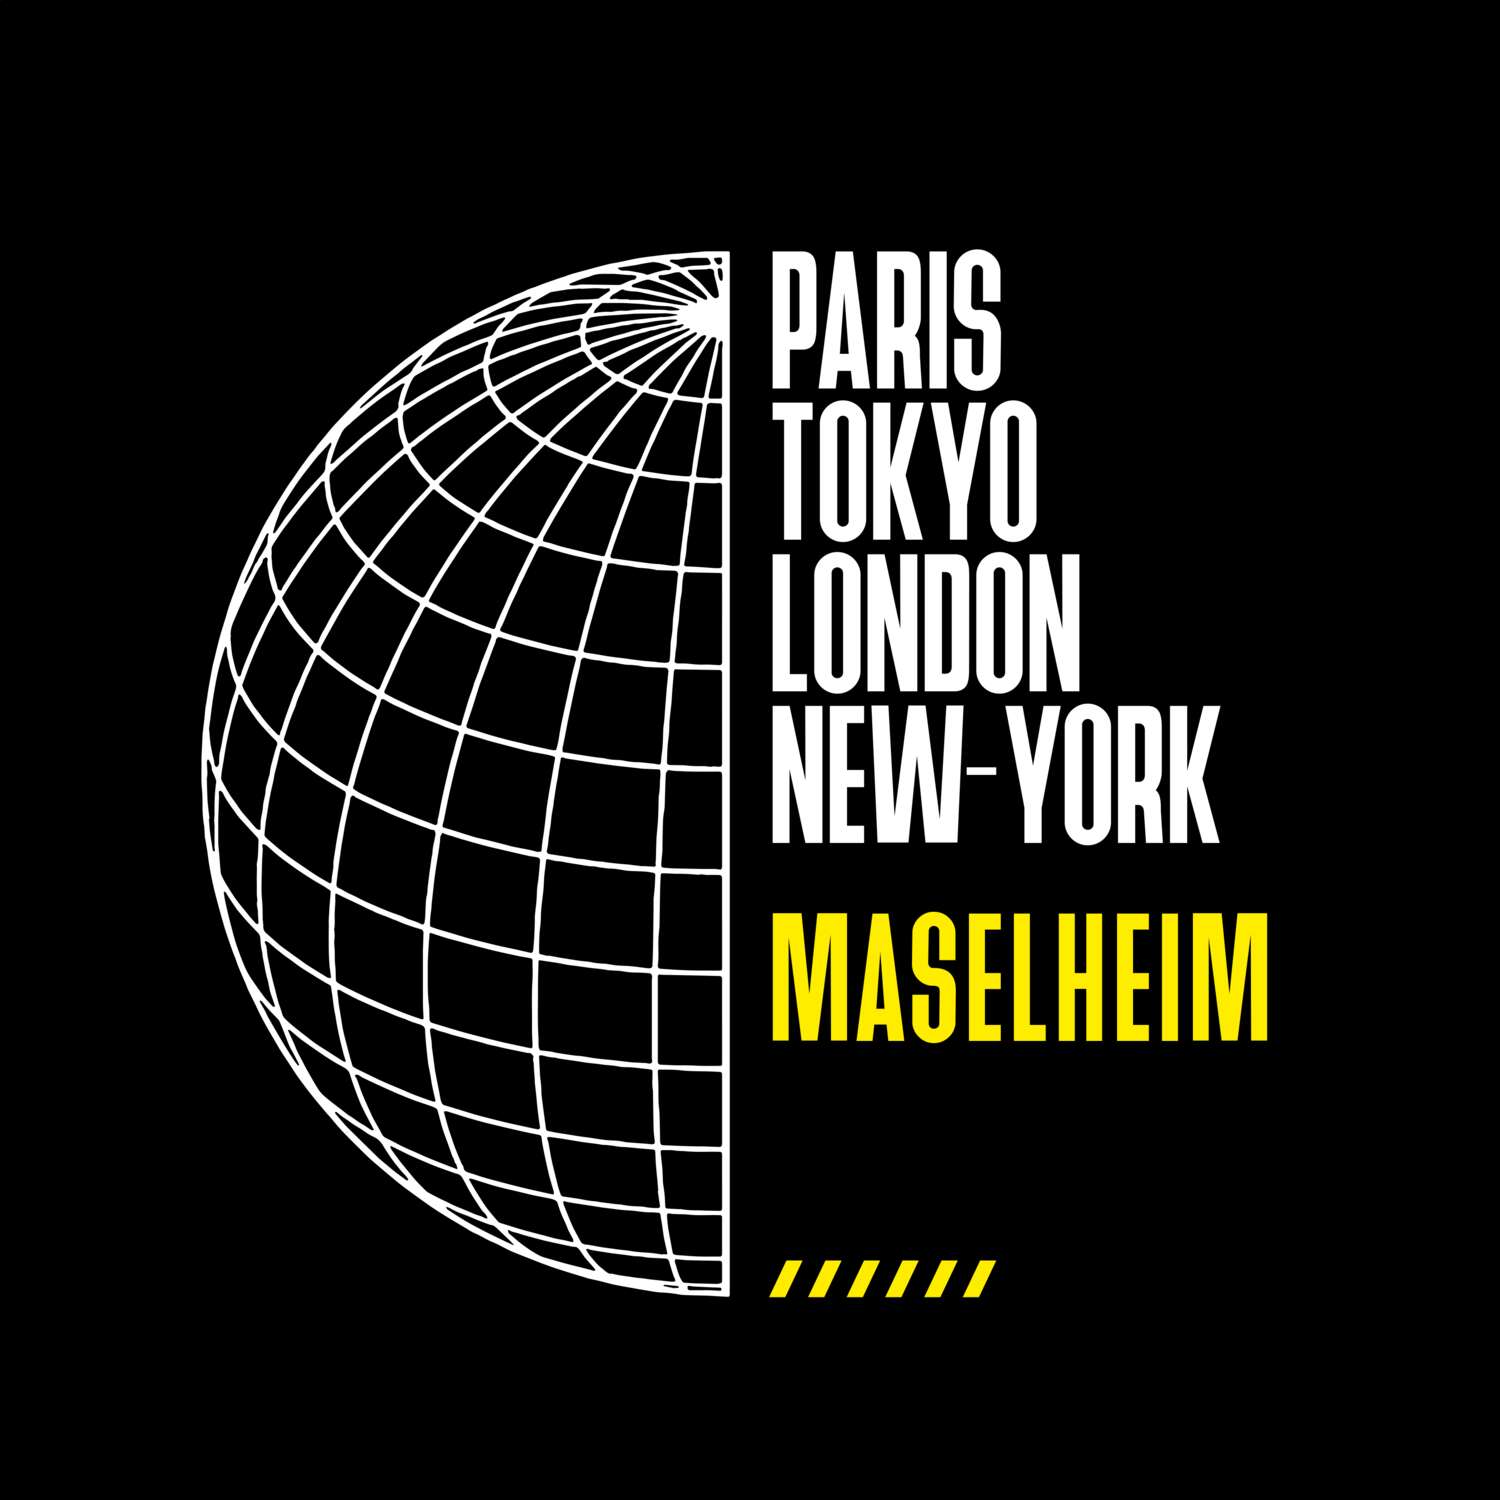 Maselheim T-Shirt »Paris Tokyo London«